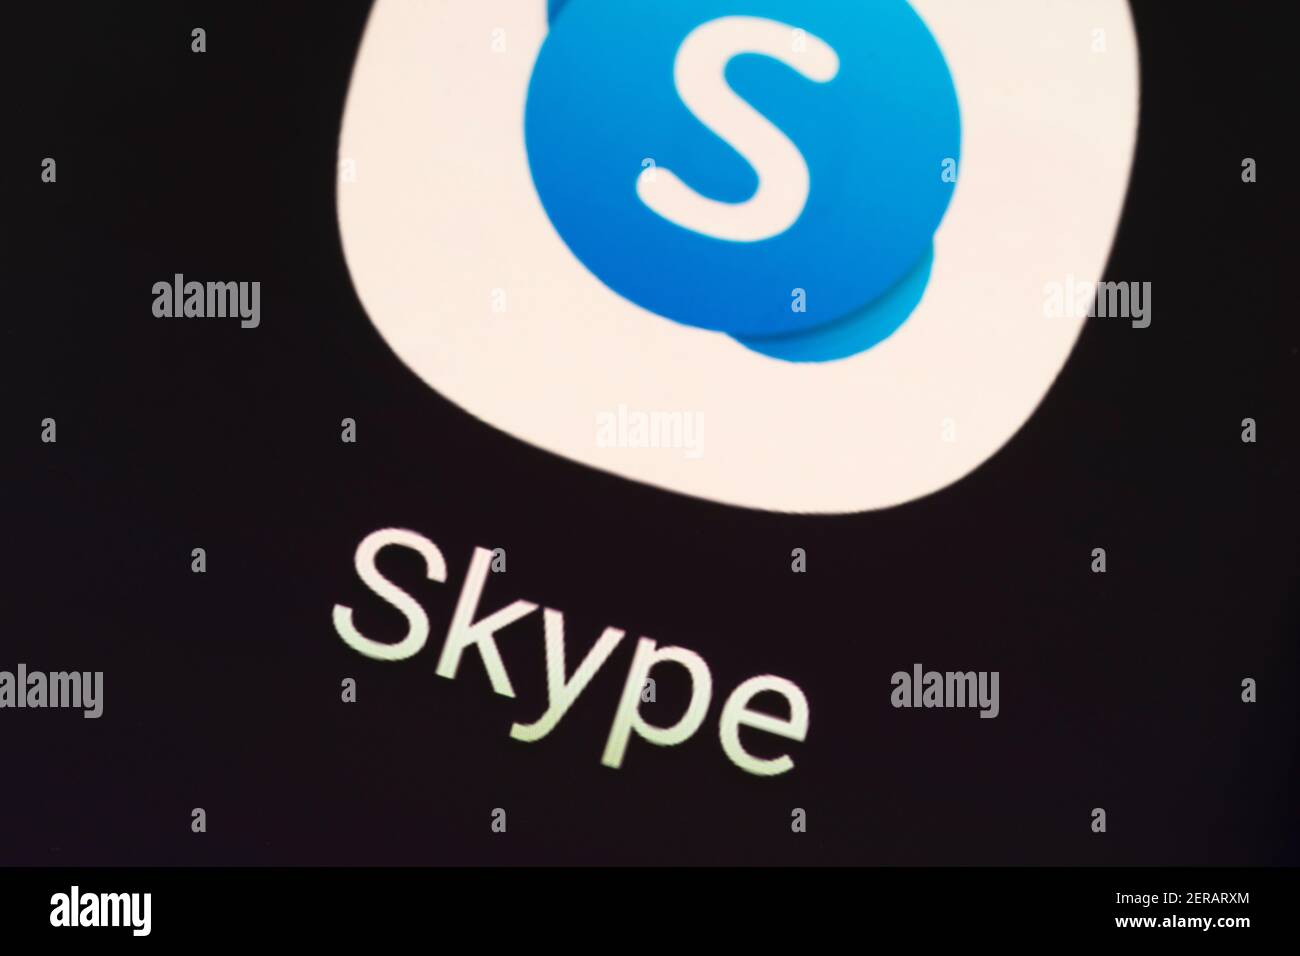 Eine Makroaufnahme des Skype-App-Logos. Skype ist eine Telekommunikationsanwendung, die sich auf Video-Chat und Sprachanrufe spezialisiert hat Stockfoto